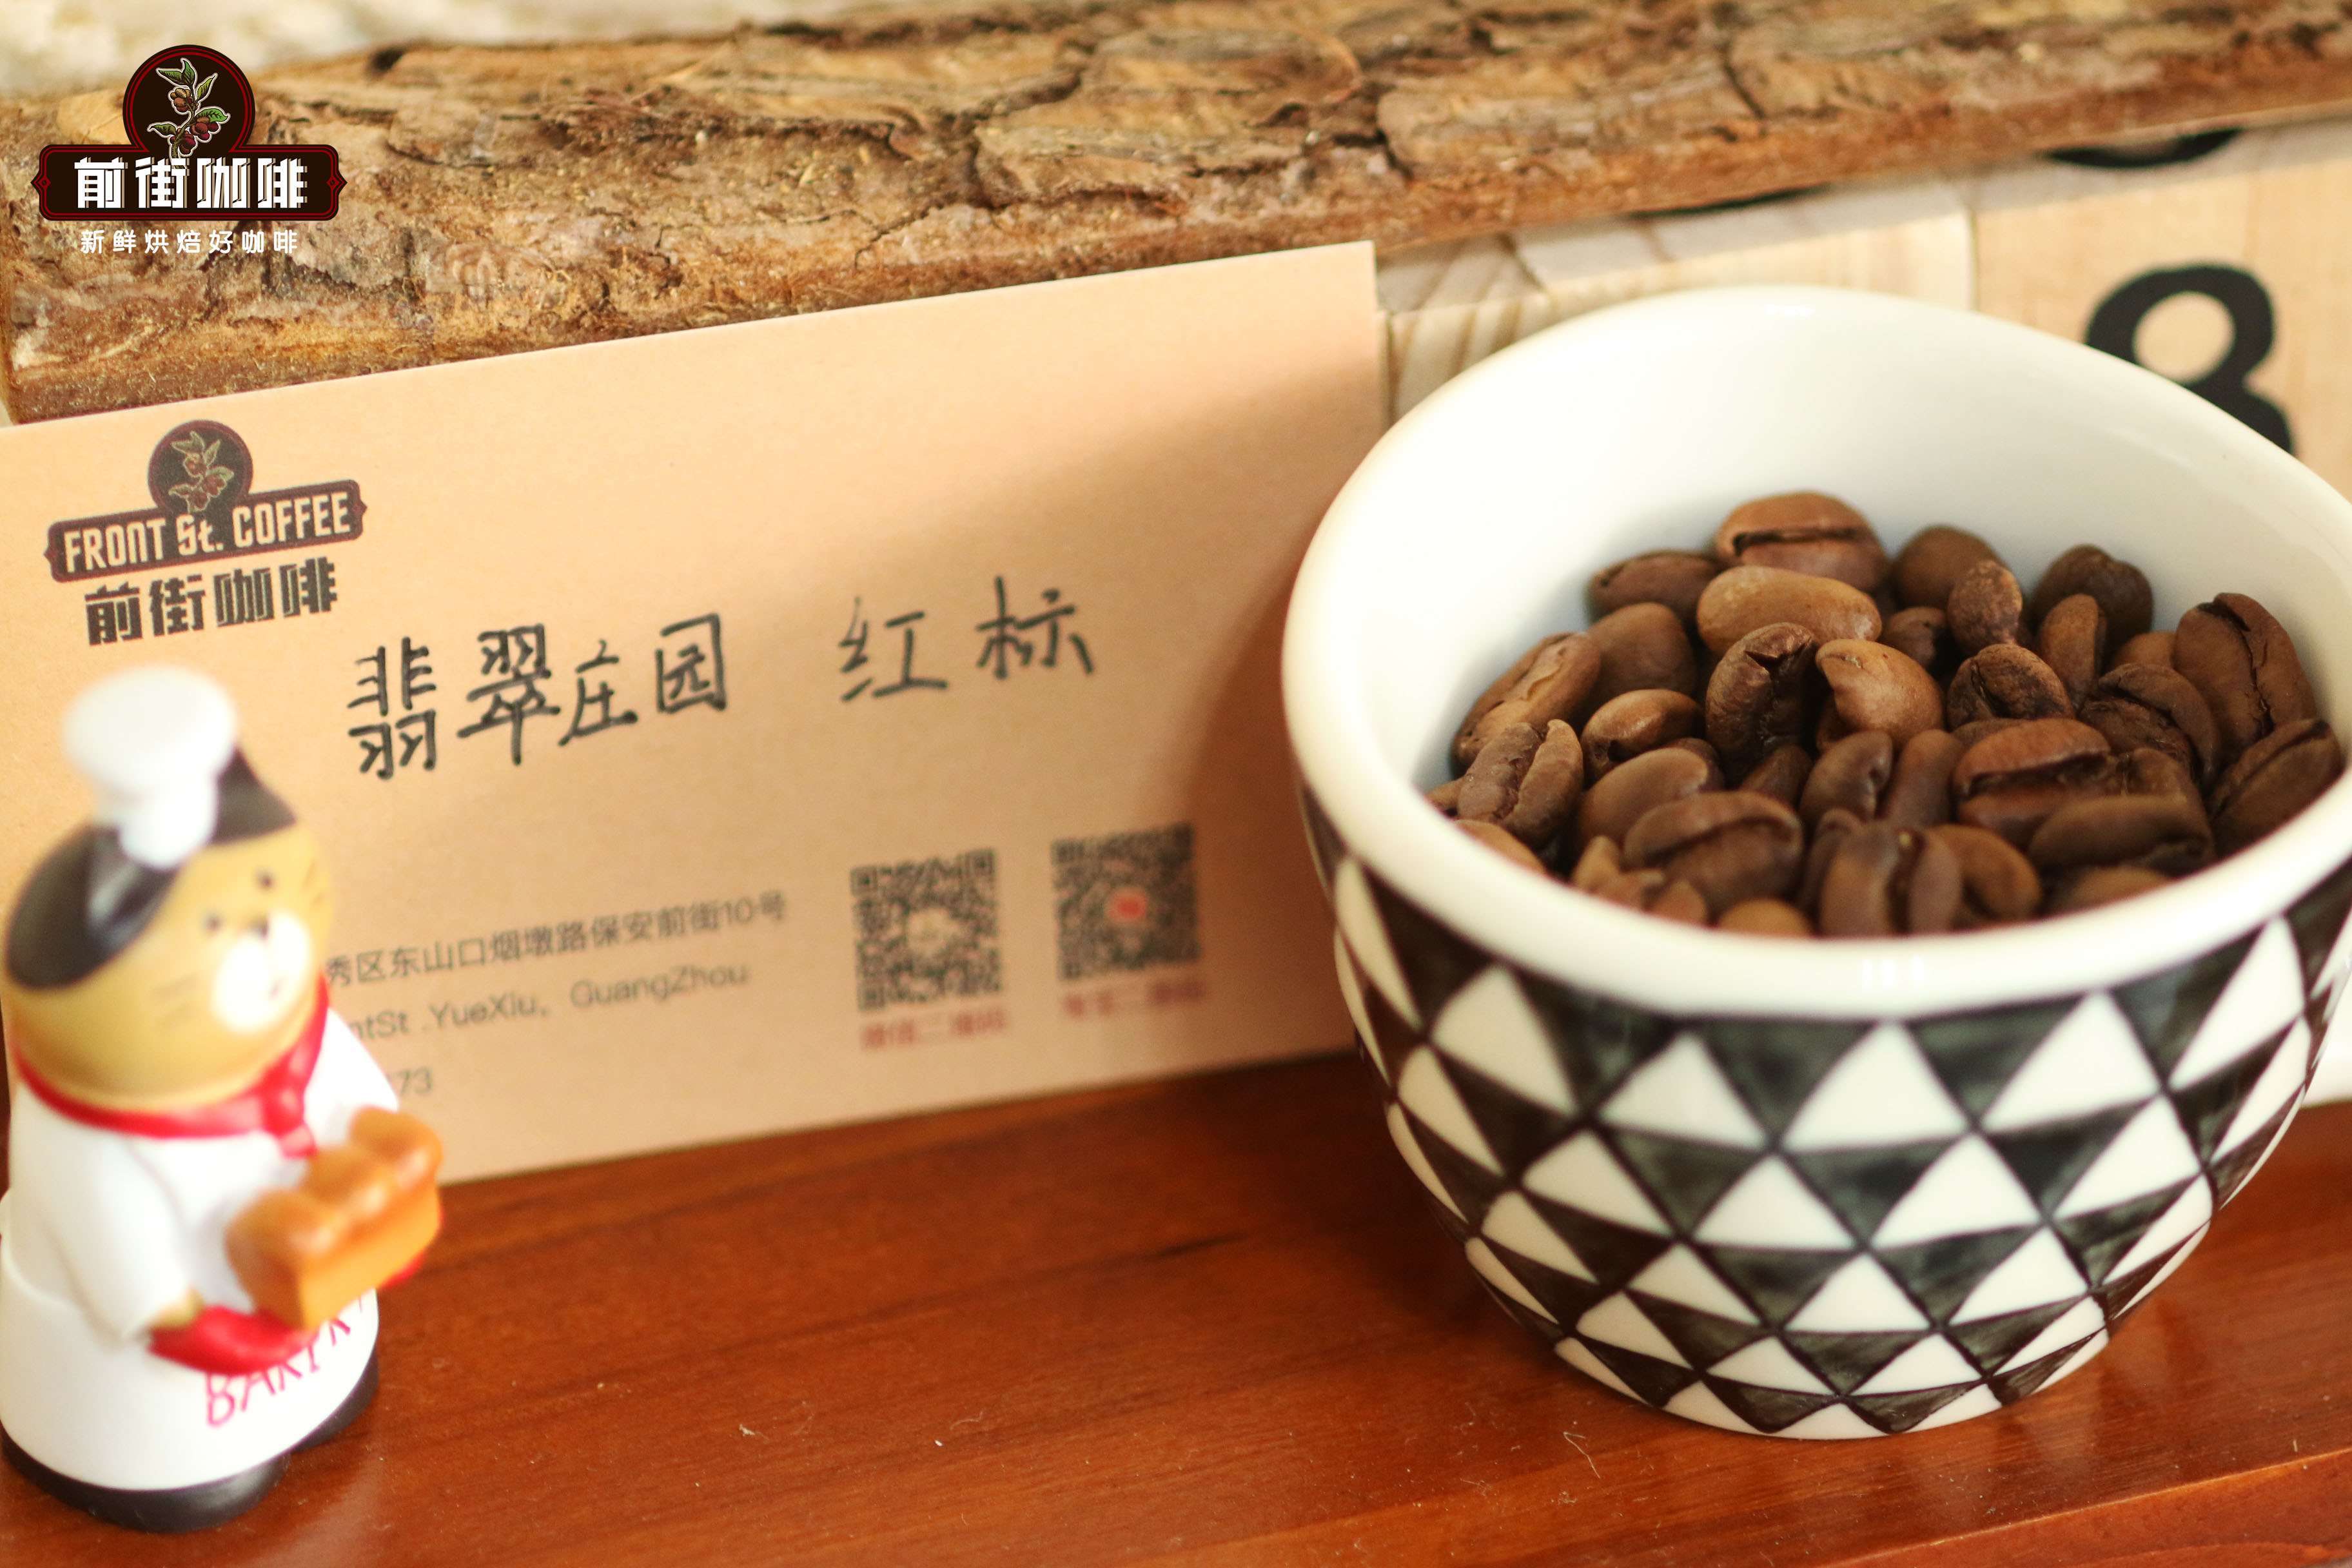 世界上最好的瑰夏咖啡豆(Geisha藝妓咖啡)產於哪裏 瑰夏特點口感介紹